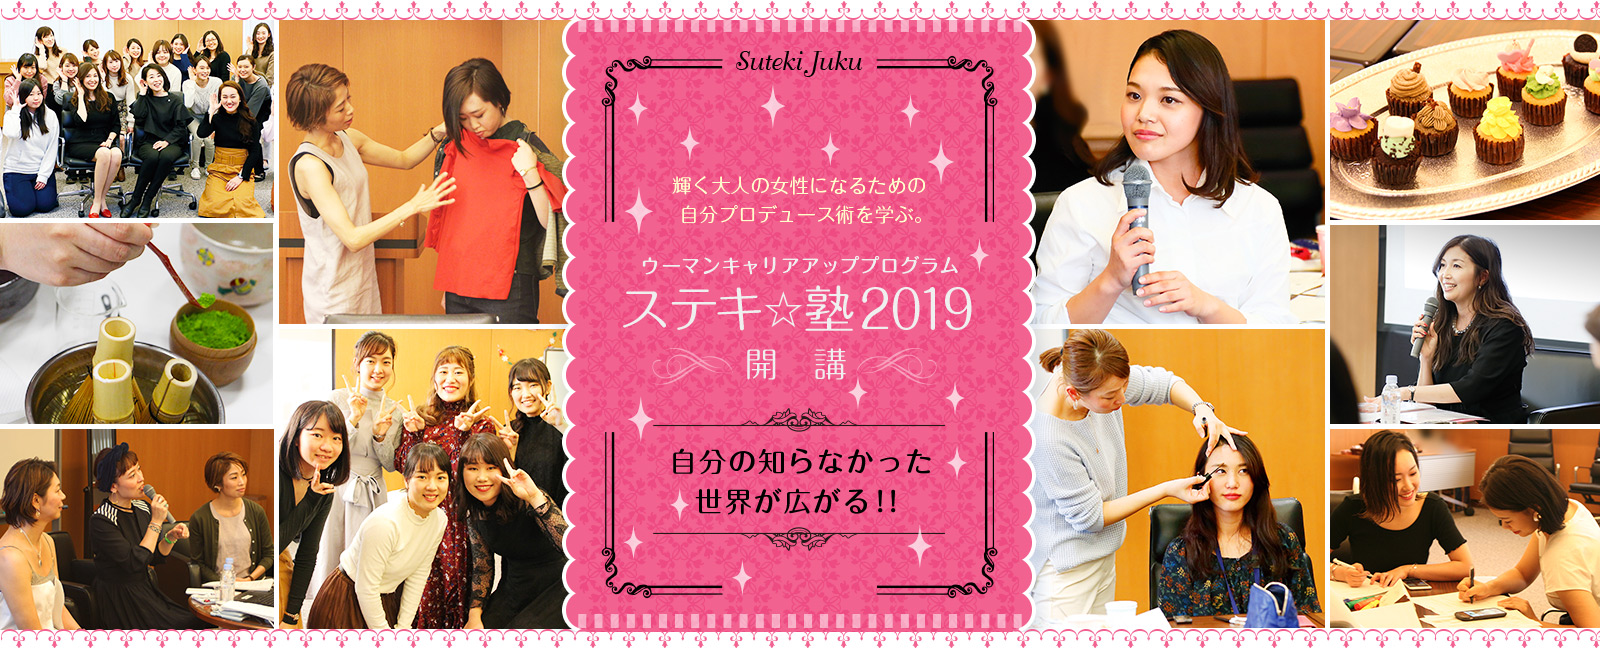 ウーマンキャリアアッププログラム「ステキ☆塾2019」開講